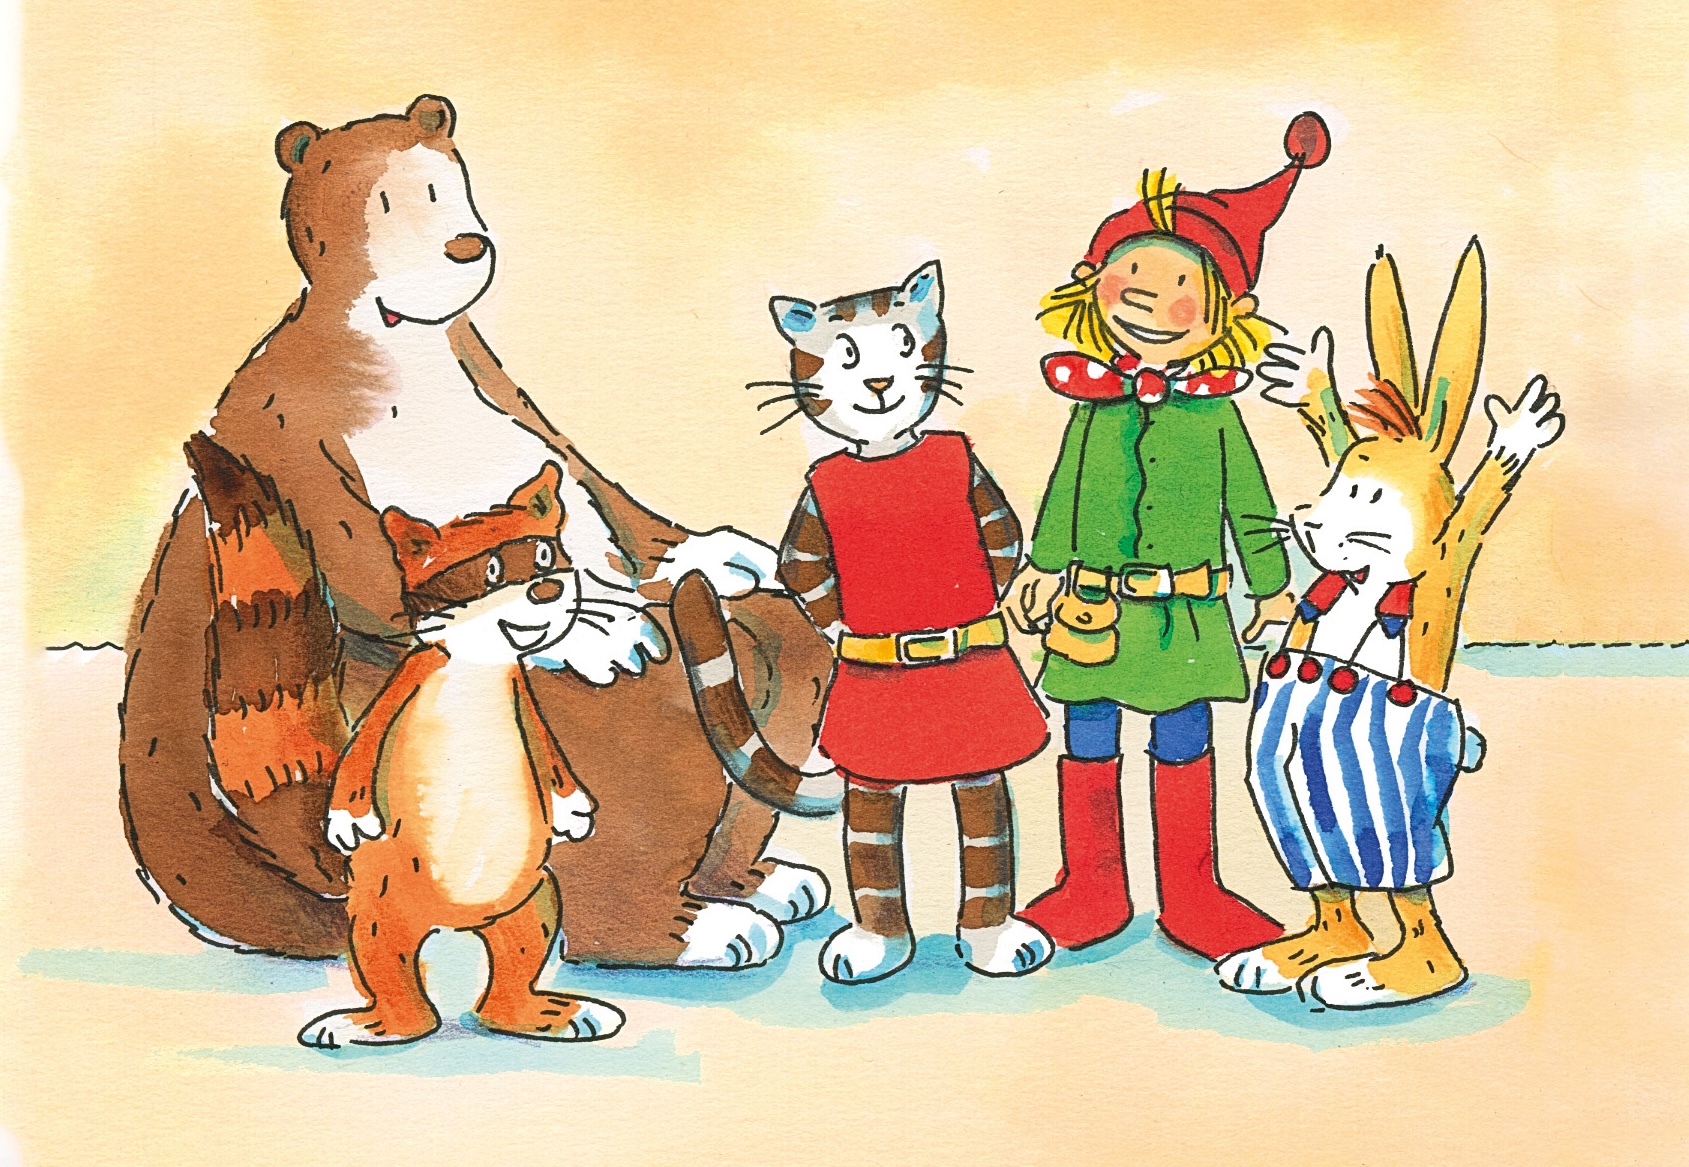 Bunte Zeichnung von Pixi, Bär, Waschbär, Katze und Hase